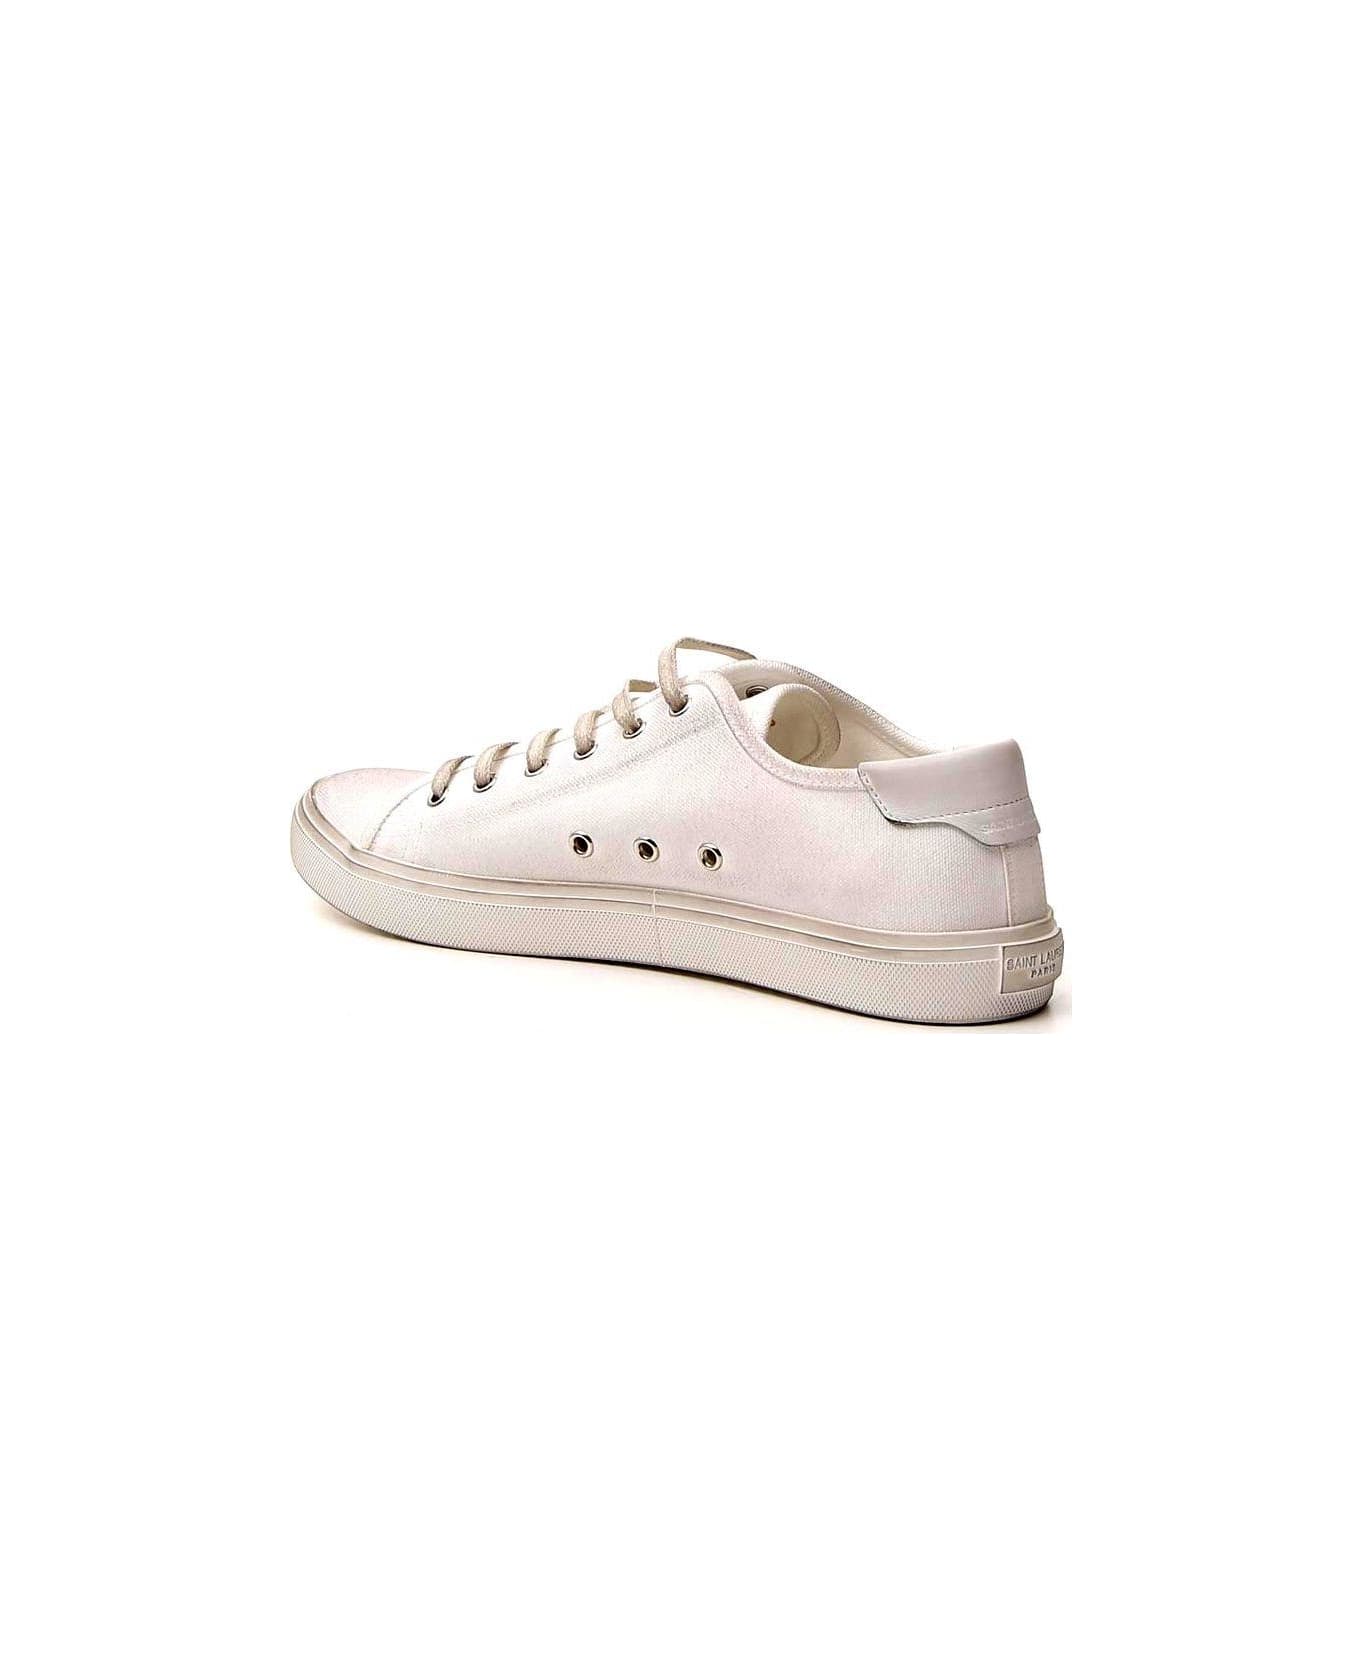 Saint Laurent Malibu Sneakers - Bianco